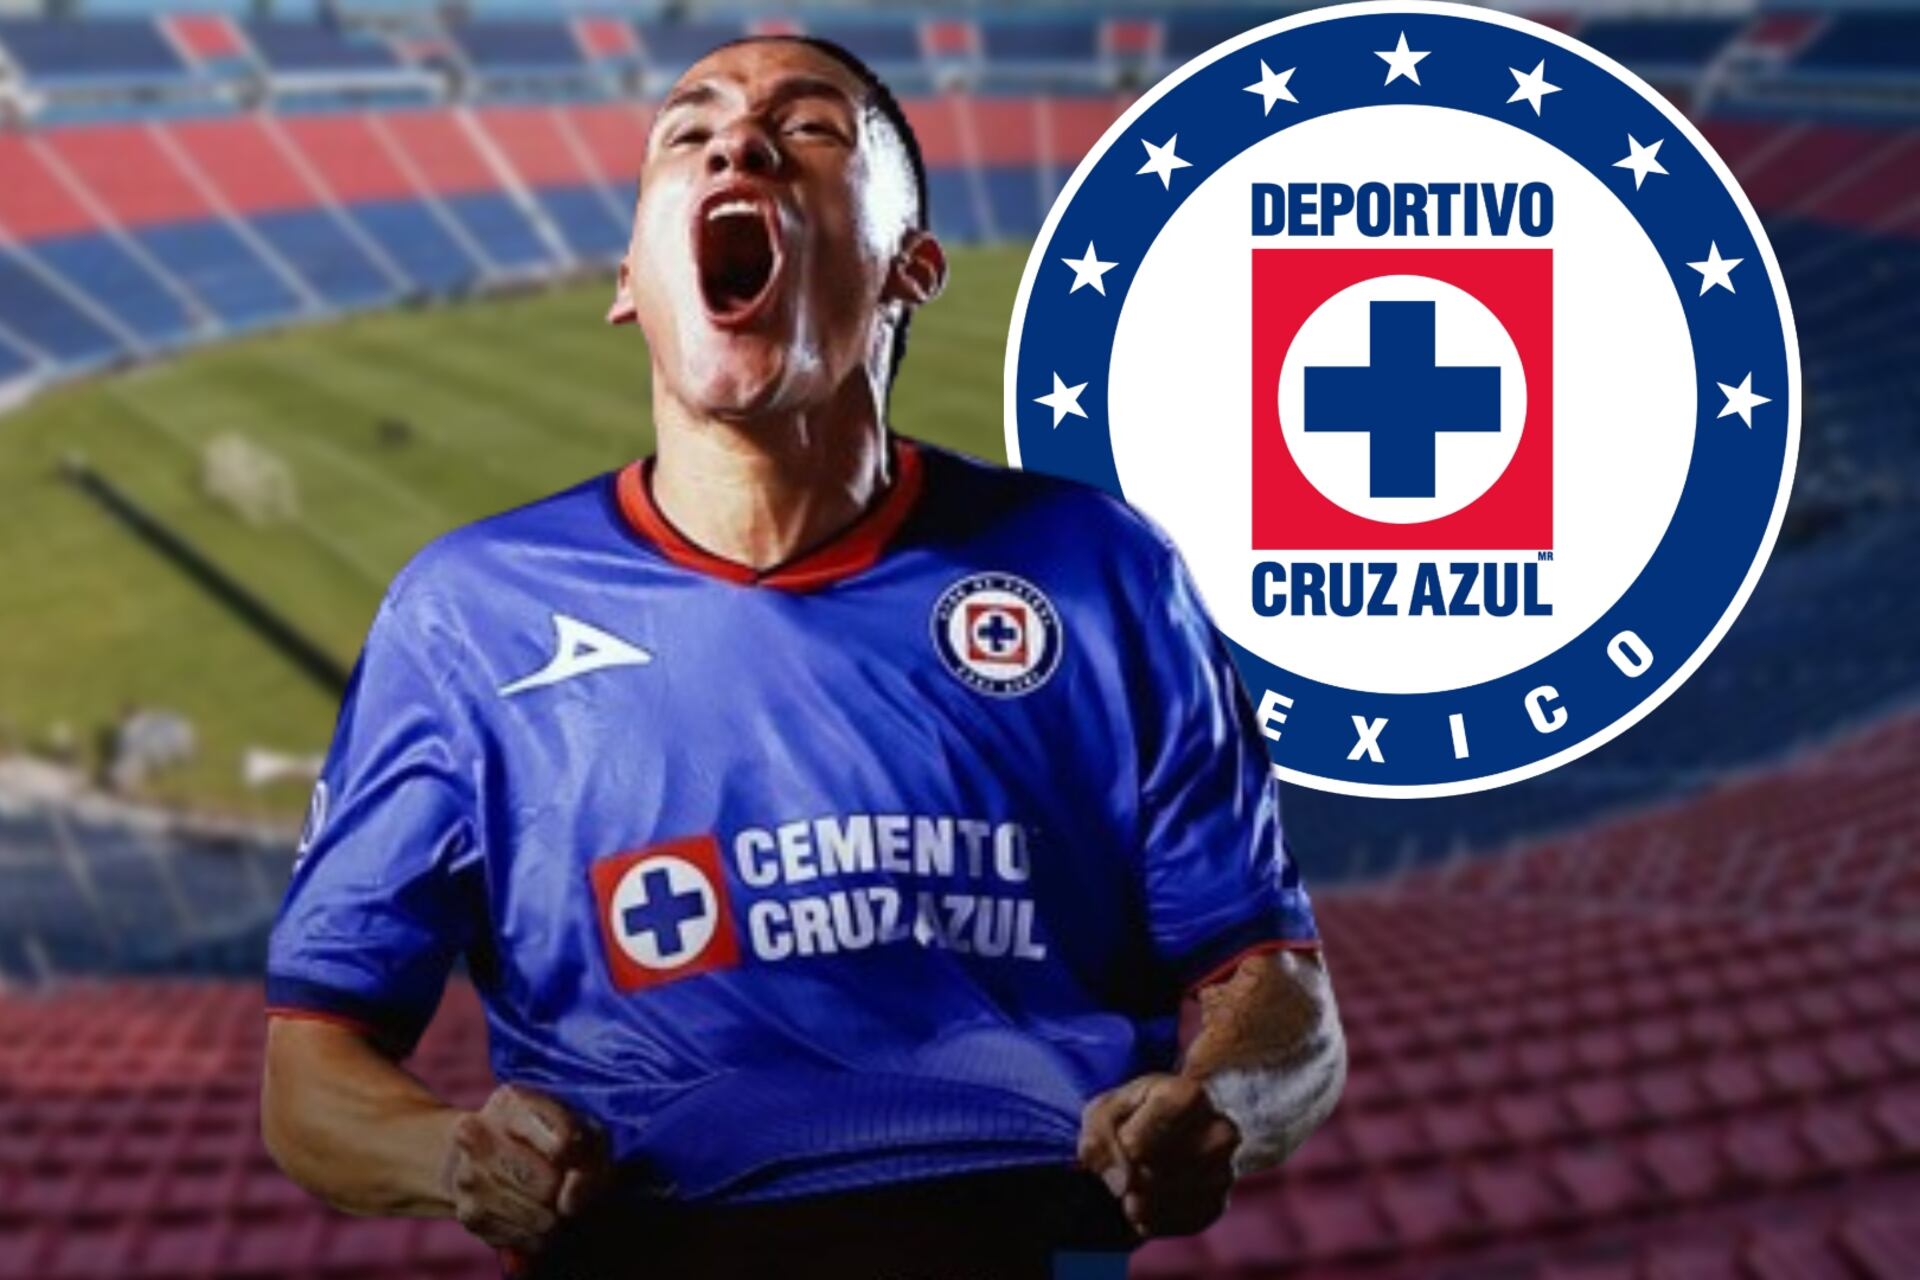 (Video) Con drama incluido, Cruz Azul eliminó a Rayados y la buena noticia para la afición